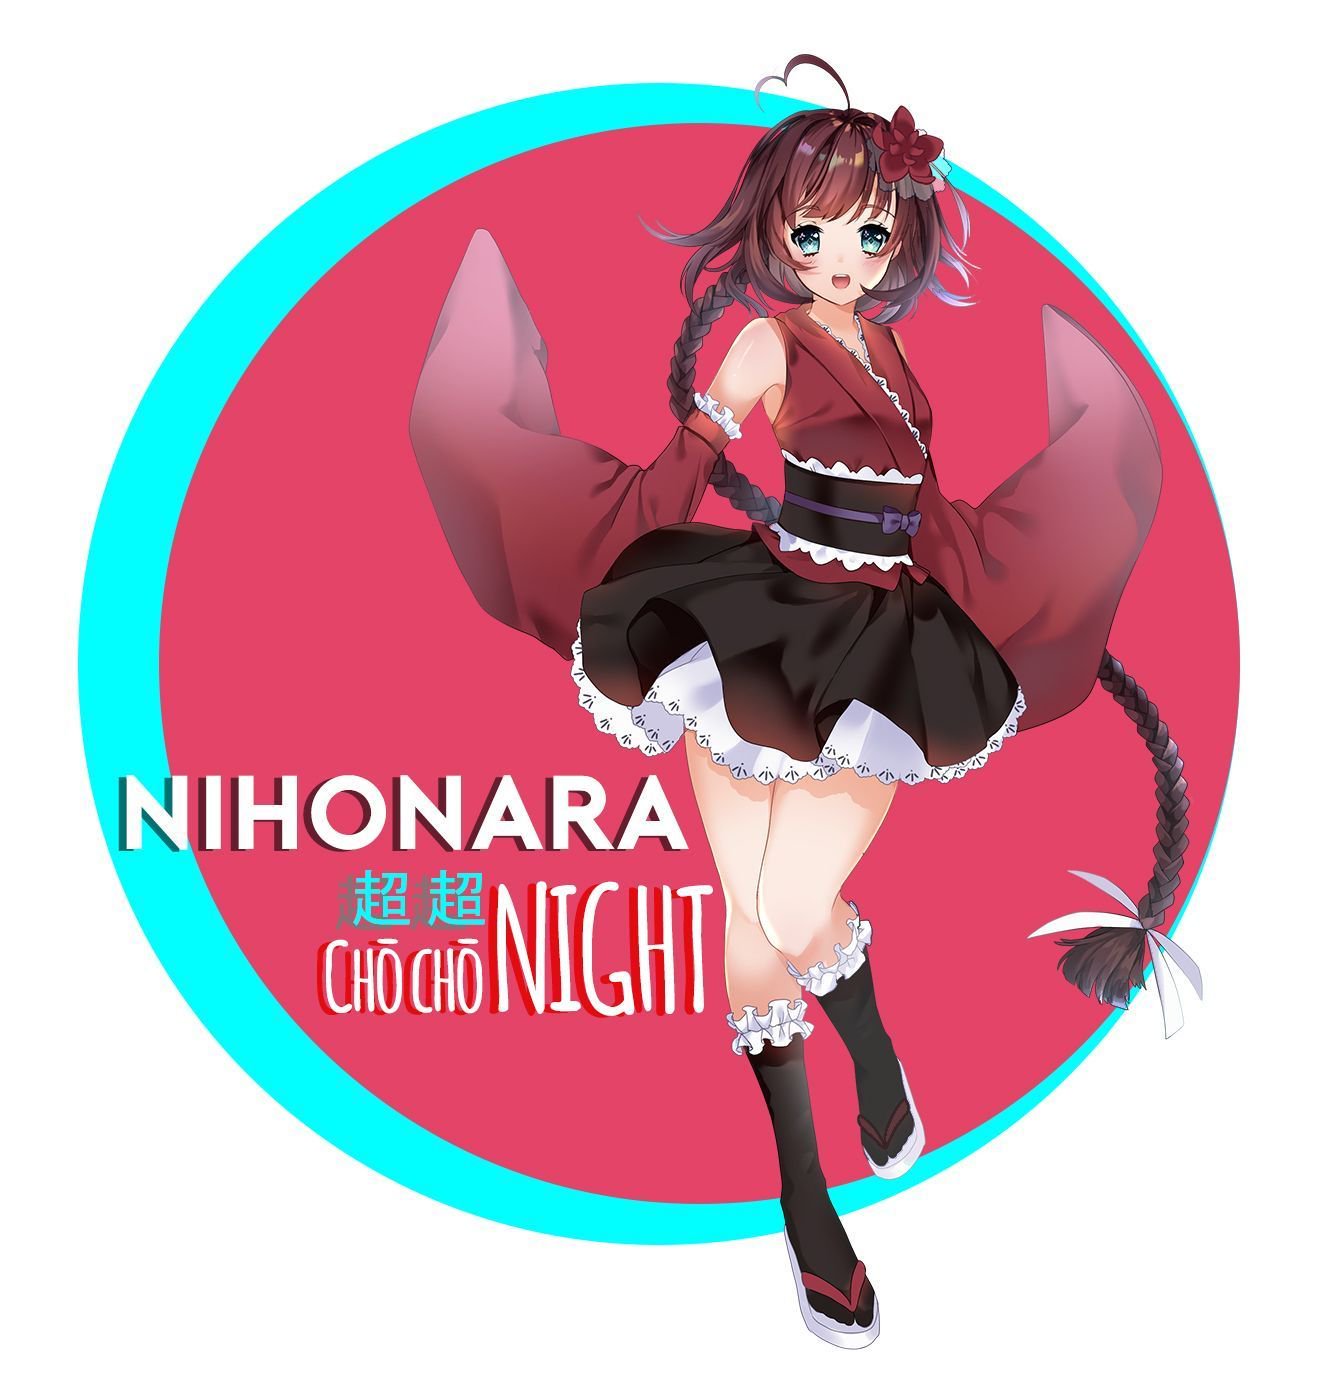 [2020/09/19に延期] Nihonara Chō Chō NIGHT